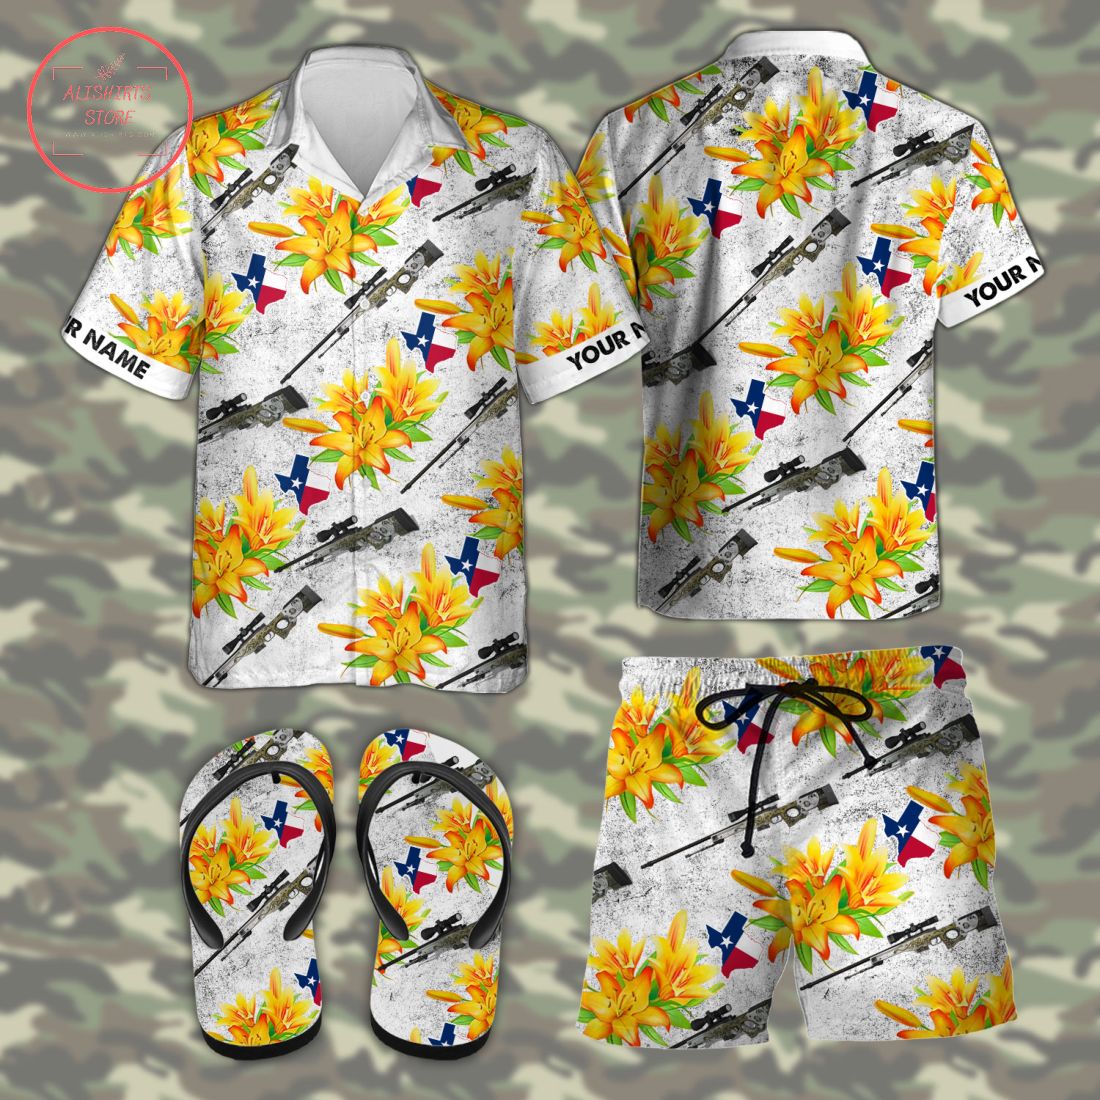 AWP Texas tactical Hawaiian Combo Shirt Shorts and Flip Flops